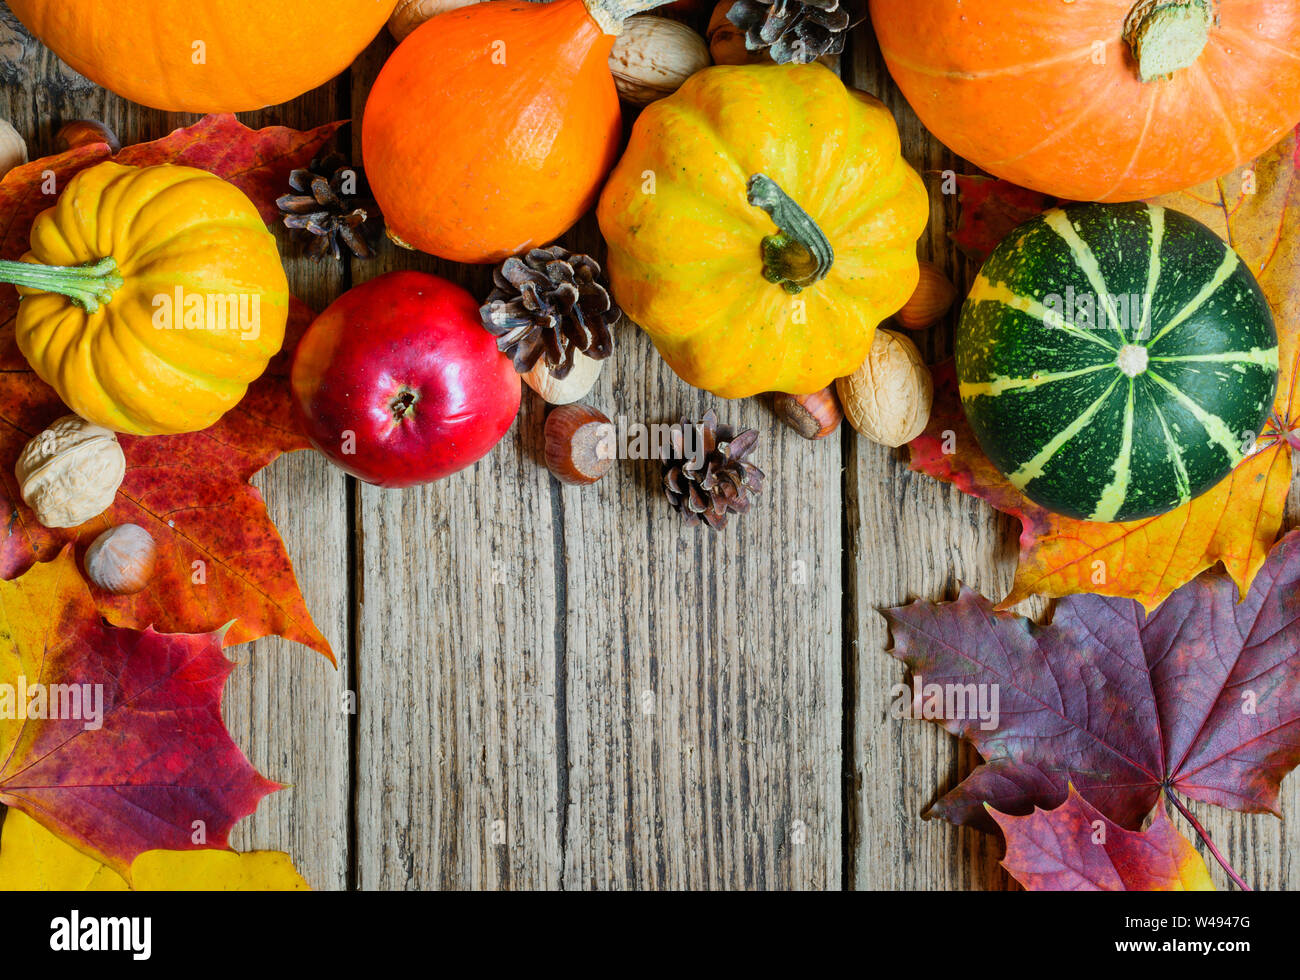 Herbst Natur Konzept. Herbst Obst und Gemüse mit Ahorn Blätter, Nüsse und Tannenzapfen auf hölzernen Tisch. Danksagung Hintergrund Stockfoto